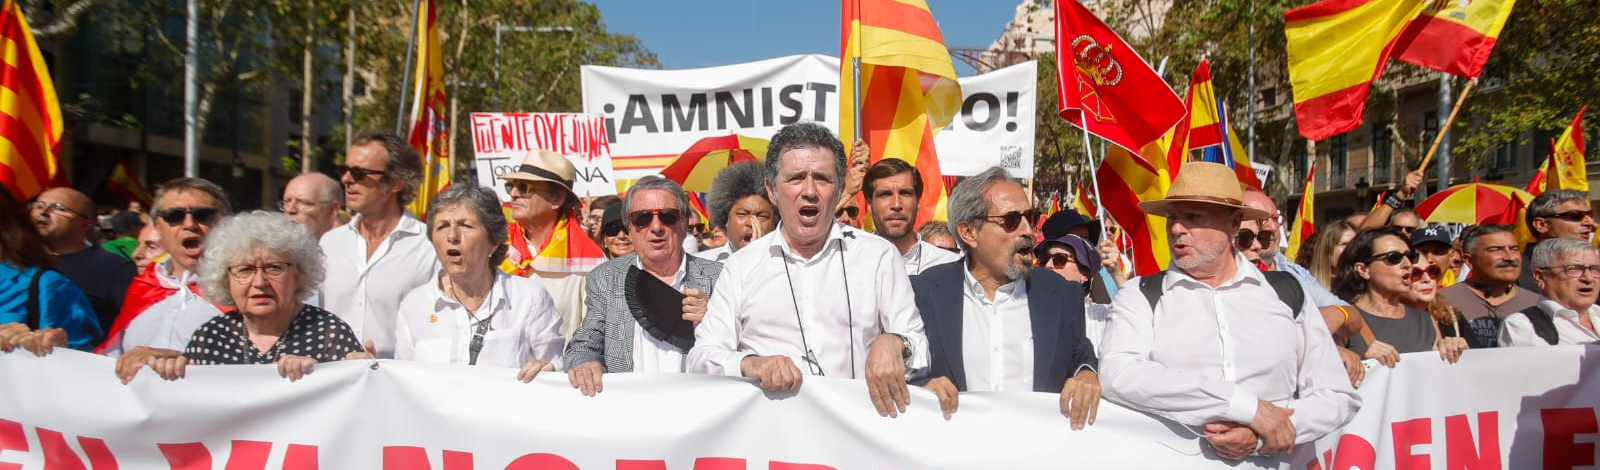 Espanha: direita e ultradireita levam milhares às ruas contra anistia e referendo a catalães